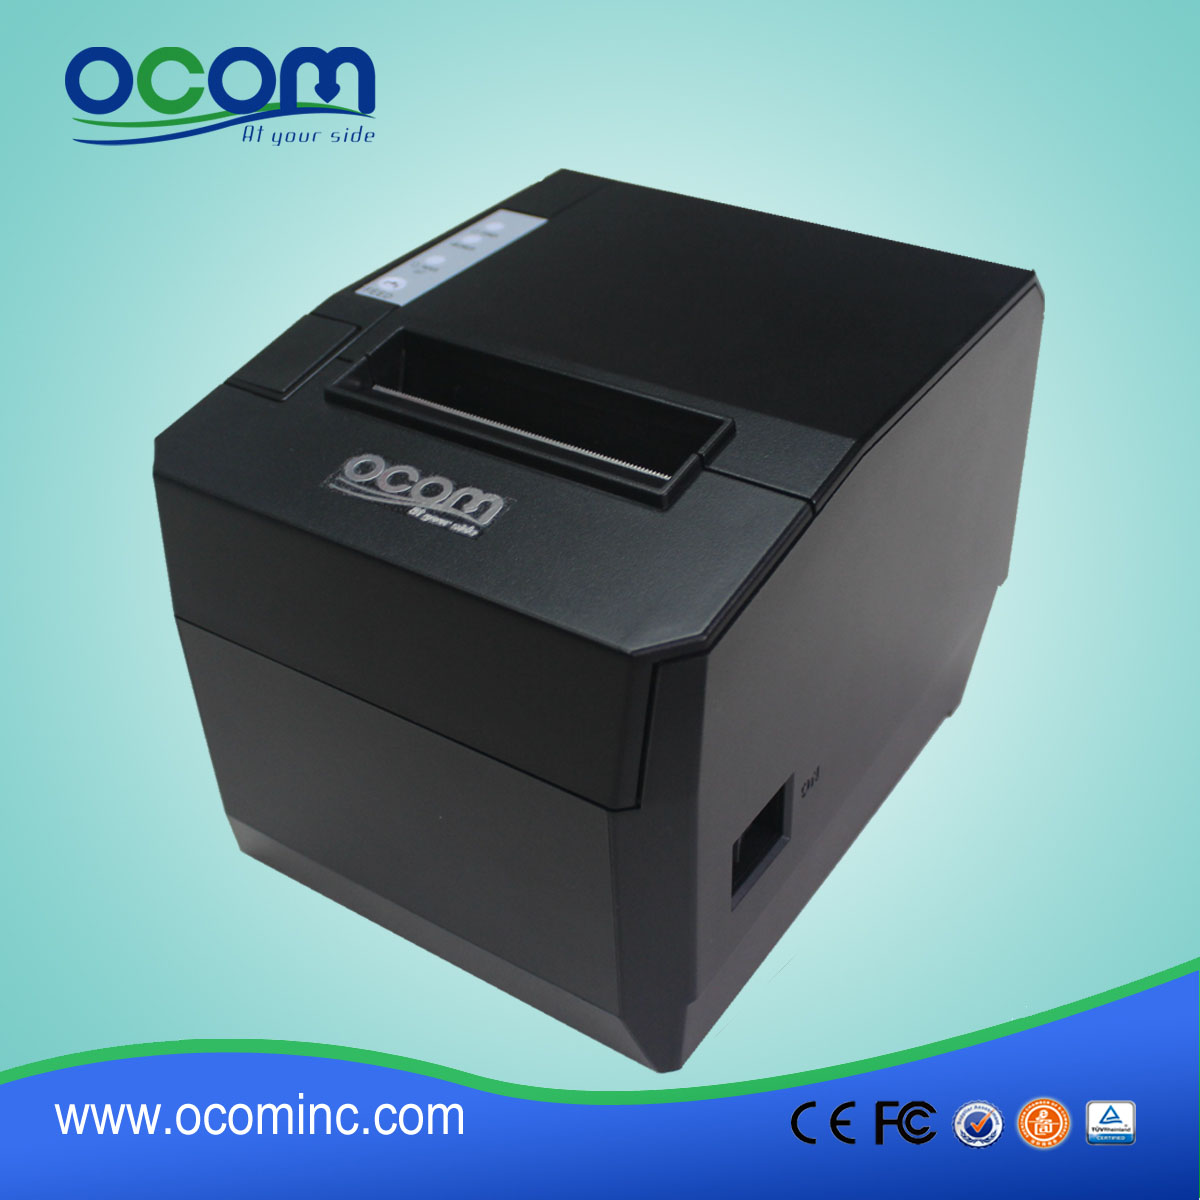 OCPP-88A-URL 80-миллиметровый термальный принтер для Bluetooth с авторезом Для android